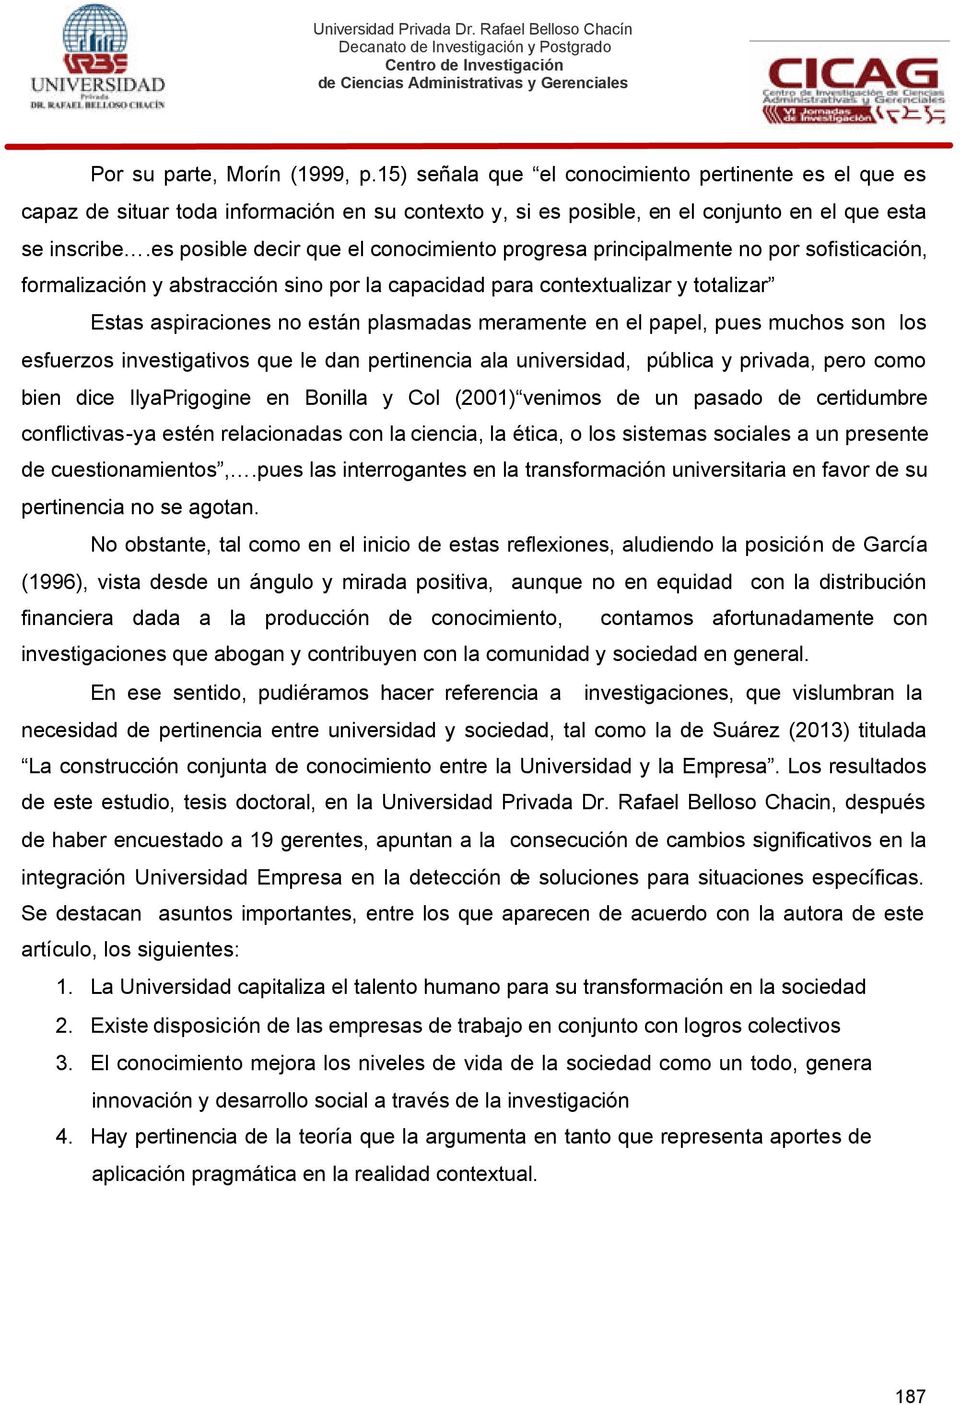 plasmadas meramente en el papel, pues muchos son los esfuerzos investigativos que le dan pertinencia ala universidad, pública y privada, pero como bien dice IlyaPrigogine en Bonilla y Col (2001)